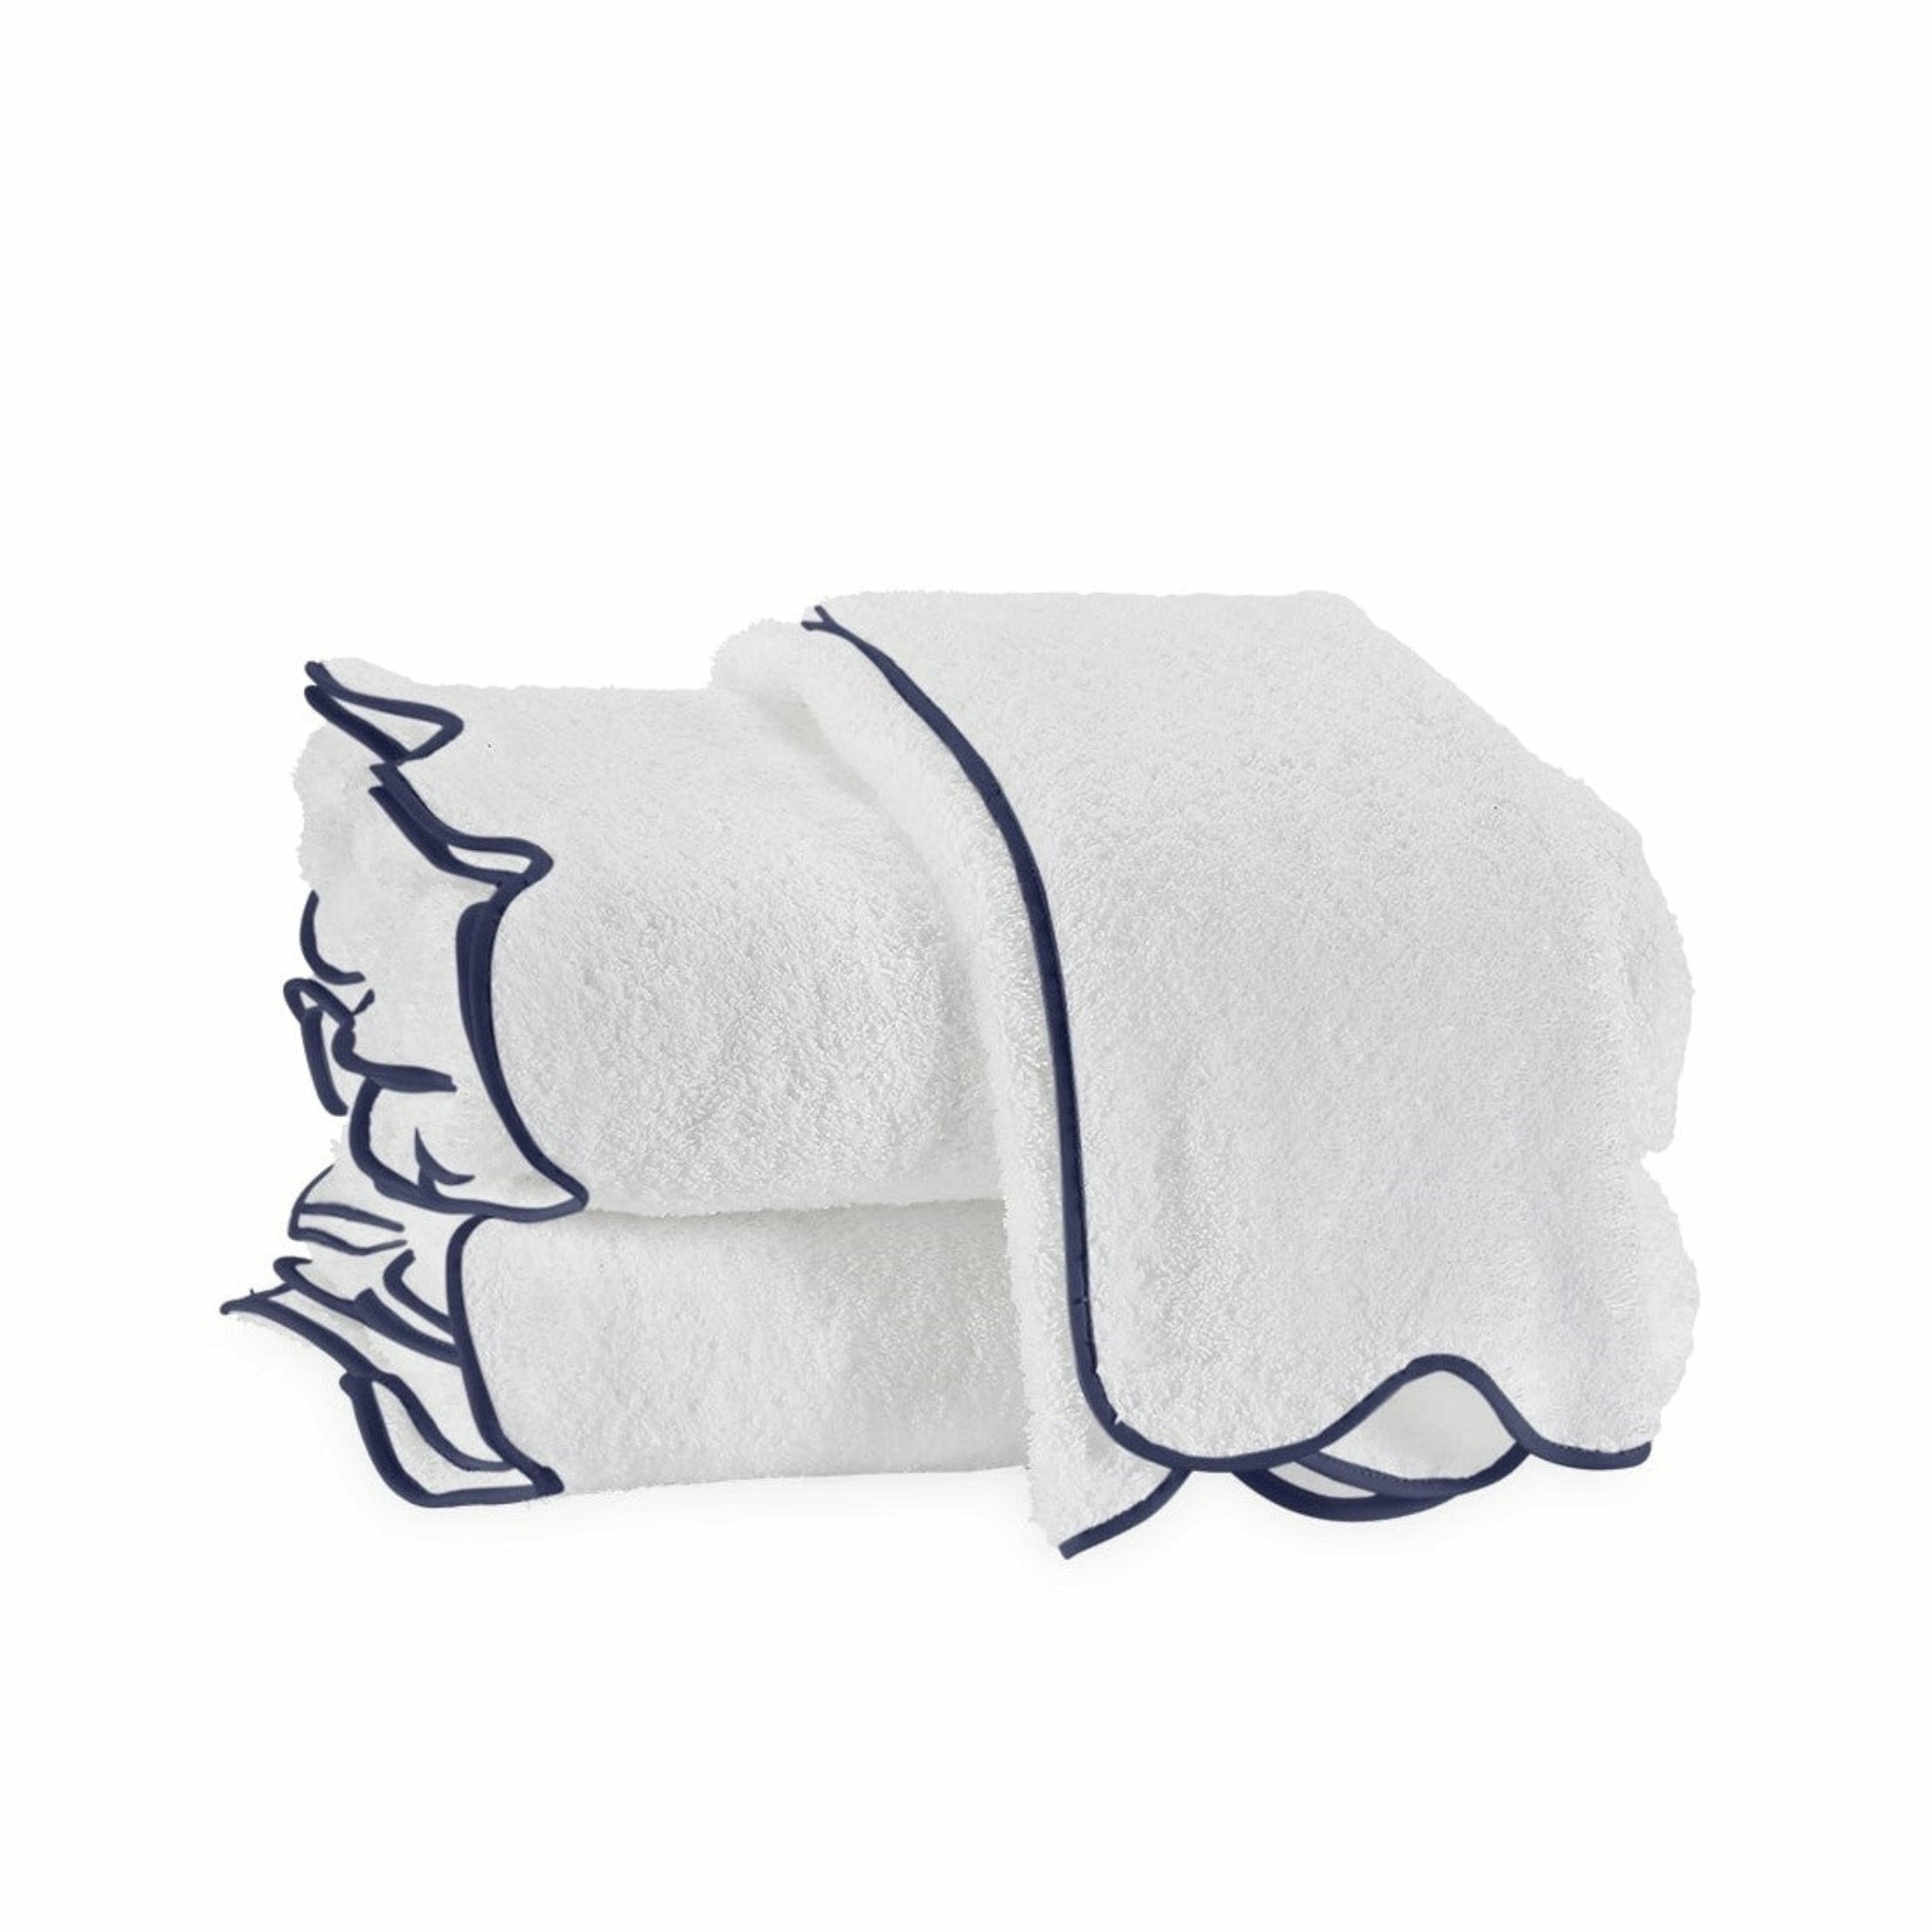 https://flandb.com/cdn/shop/products/Matouk-Cairo-Scallop-Bath-Towels-Navy_5000x.jpg?v=1660866912